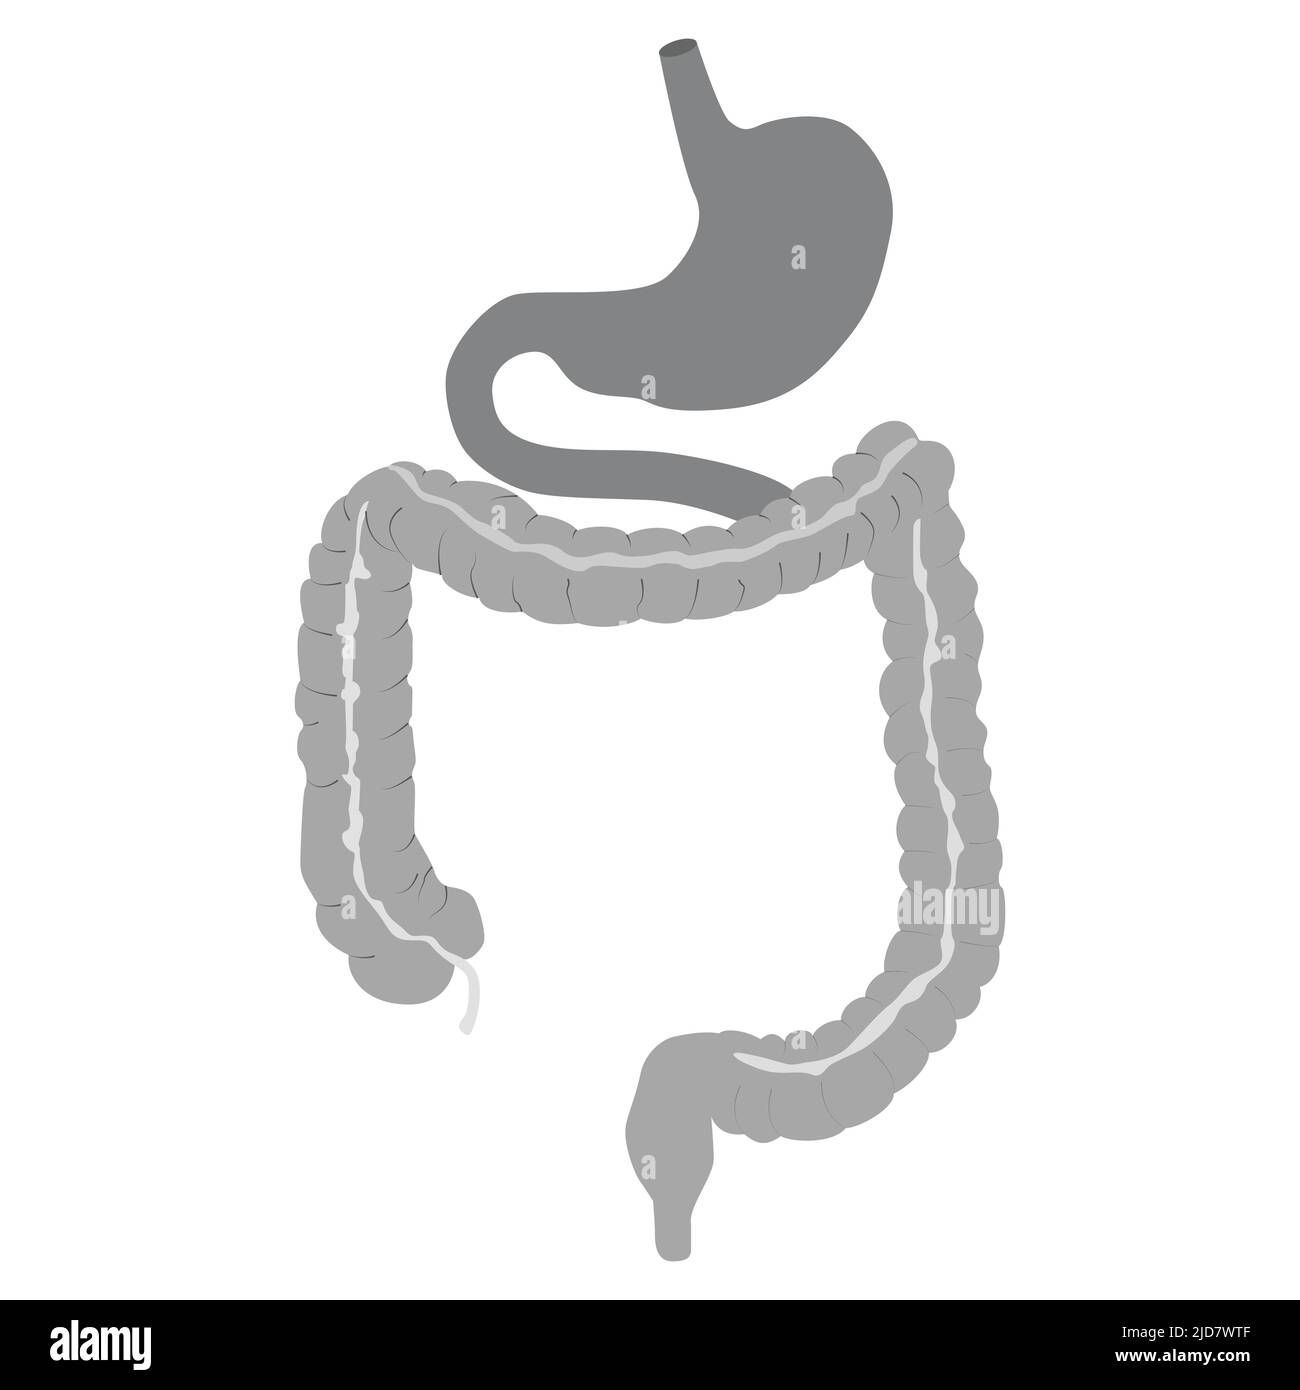 Icona dello stomaco umano. Organo interno, anatomia. Immagine di un'icona piatta vettoriale isolata su sfondo bianco. Illustrazione da vettore circa la scienza e me Illustrazione Vettoriale